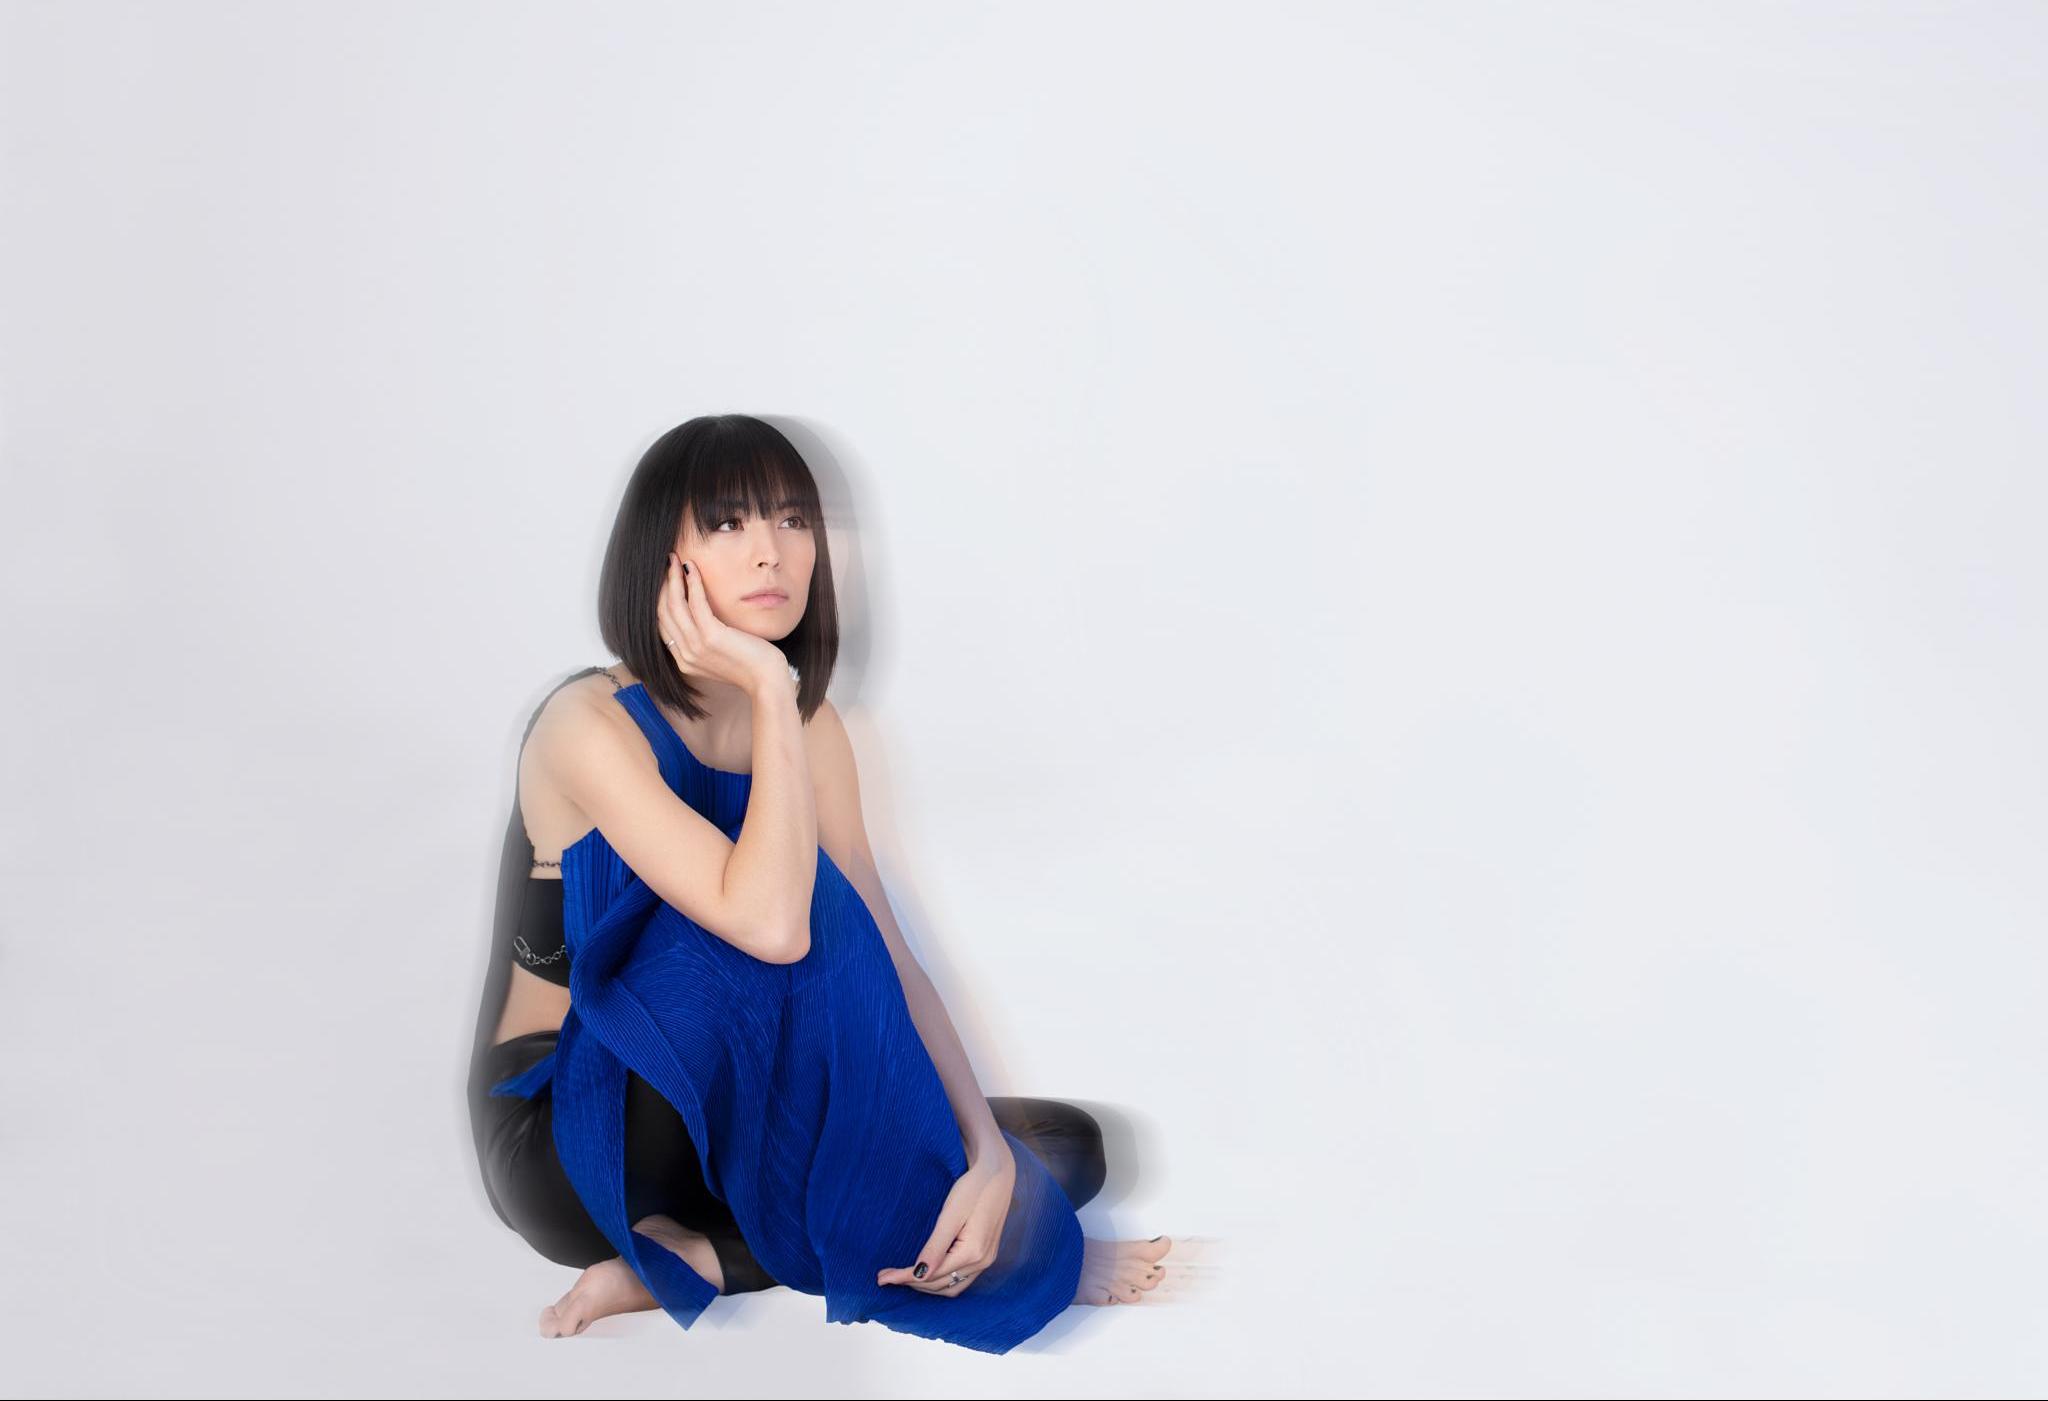 Porträt der Pianistin Alice Sara Ott. Sie sitzt in einem blauen Kleid vor einem weißen Hintergrund. Das Bild ist so bearbeitet, dass es leicht verschwommen wirkt.